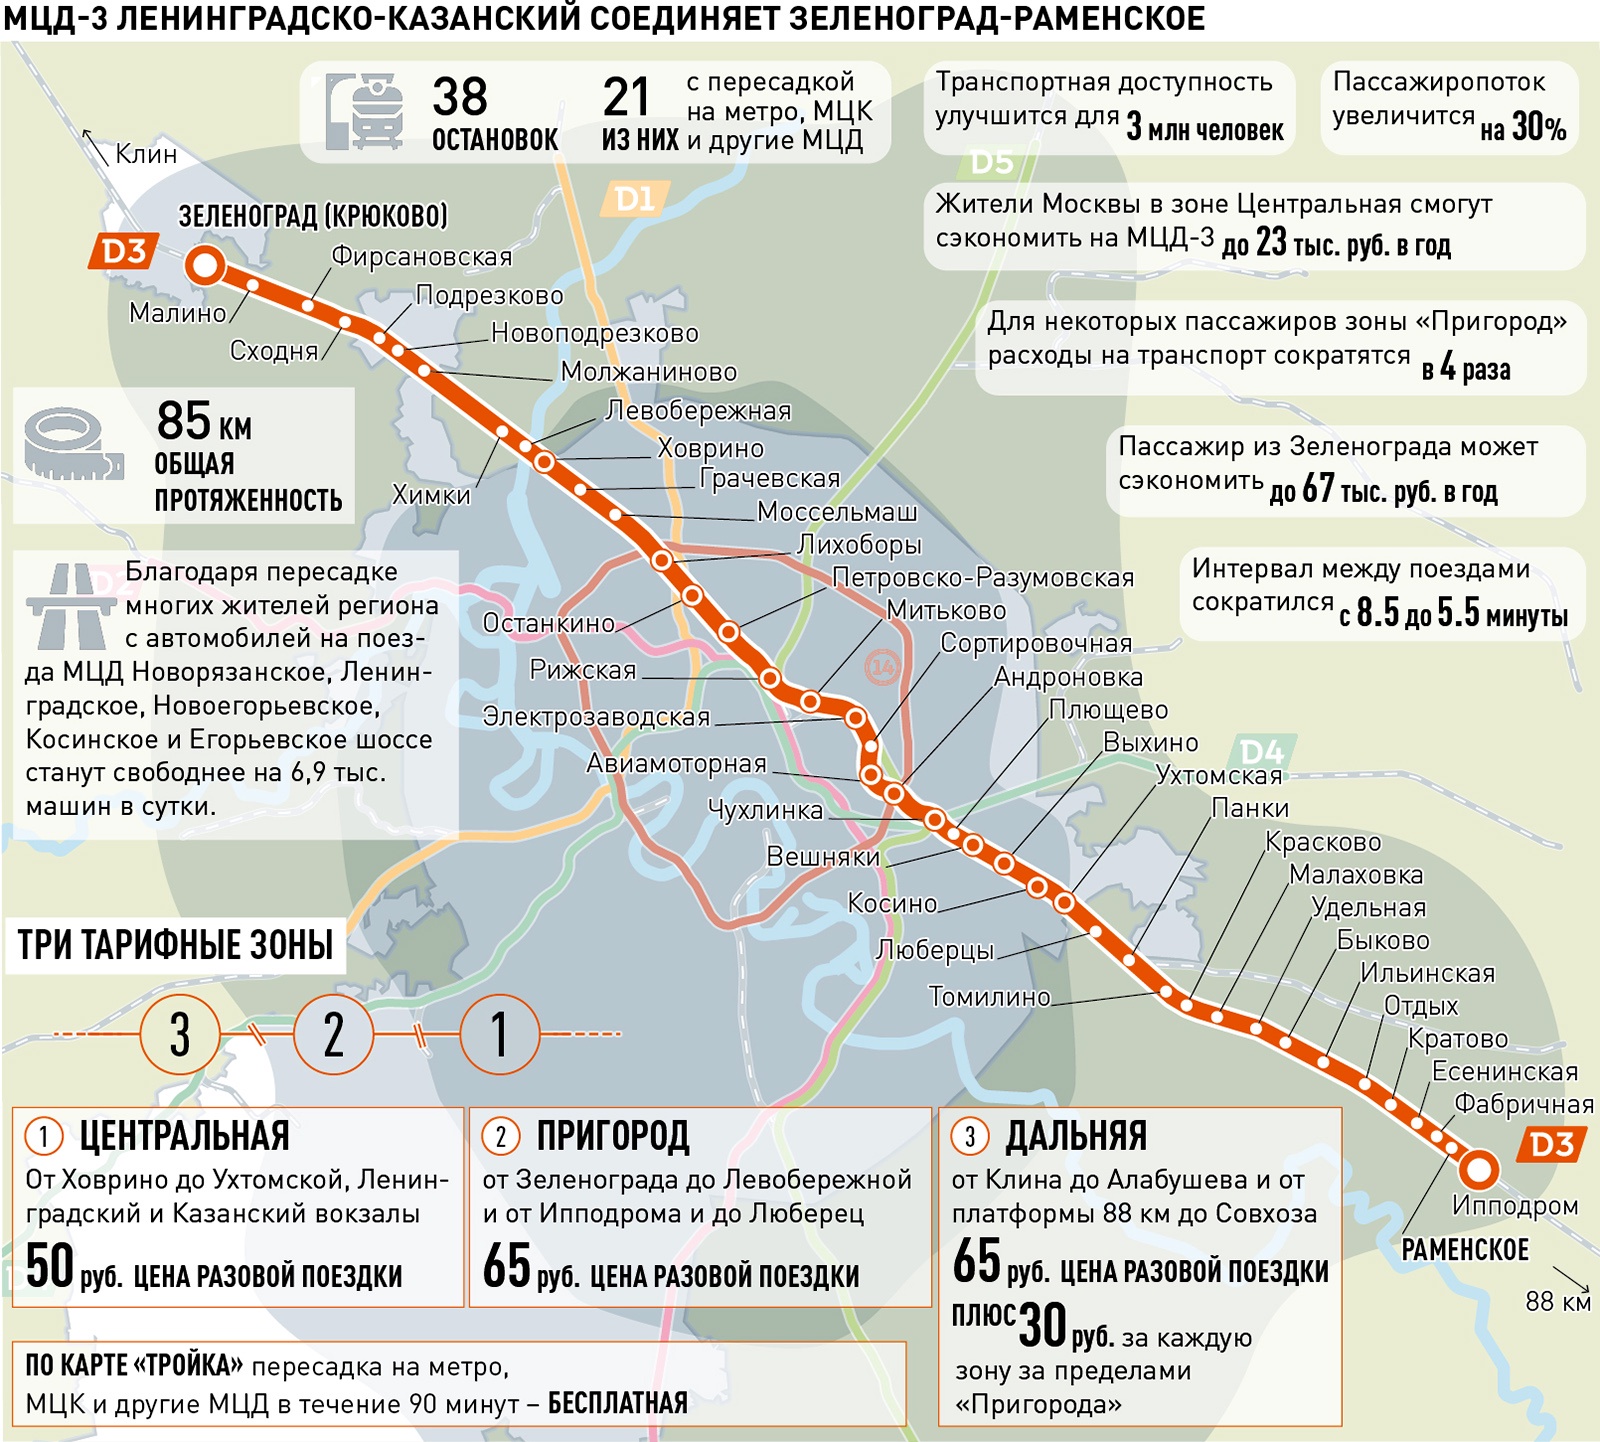 МЦД-3: схема с тарифными зонами, цены, станции - Российская газета